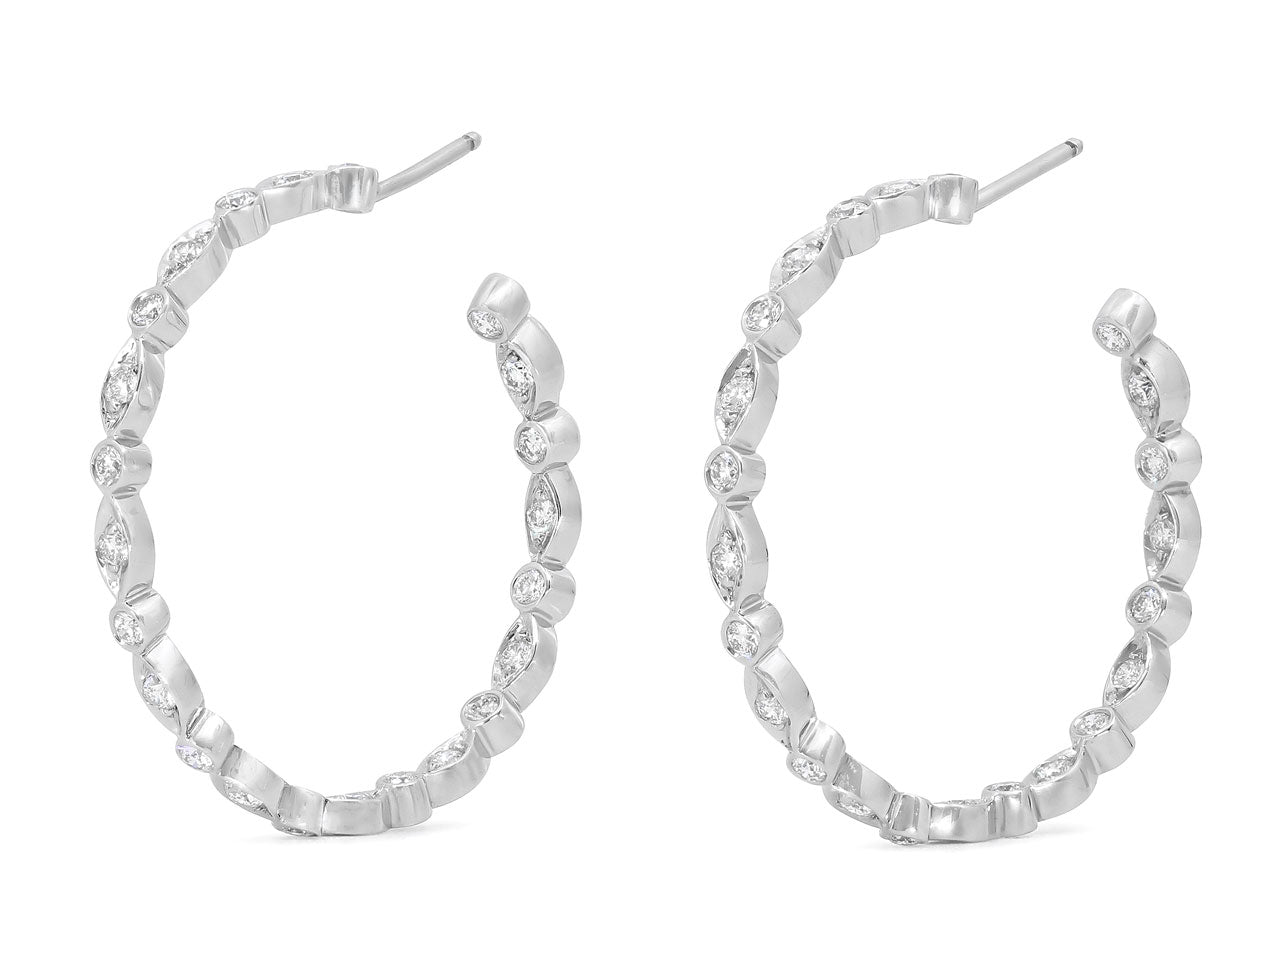 Tiffany & Co. 'Jazz' Diamond Hoop Earrings in Platinum